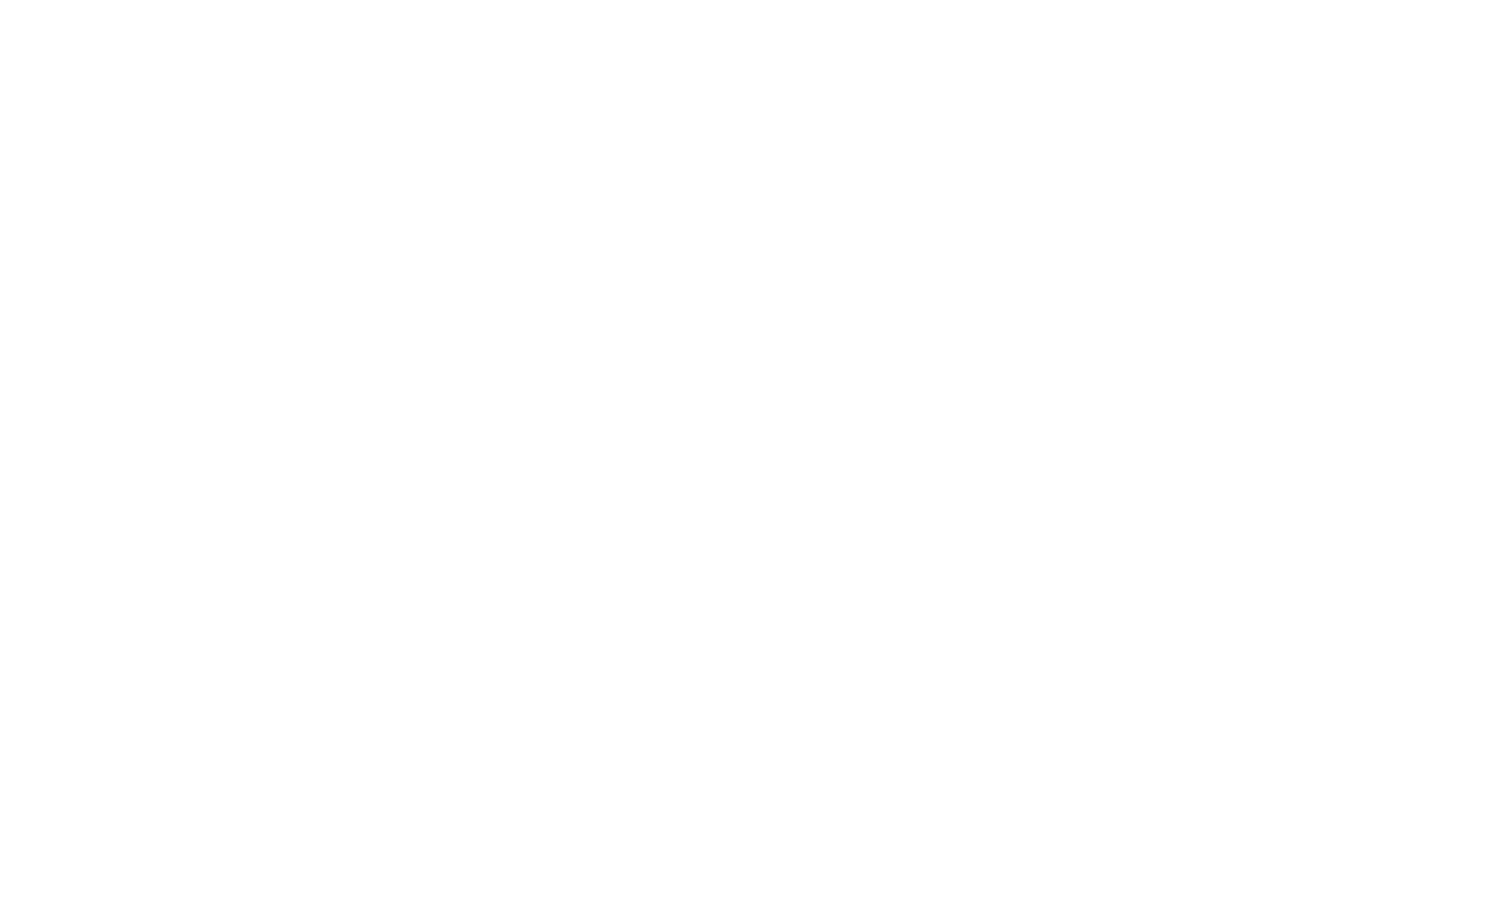 Circus Scorpius